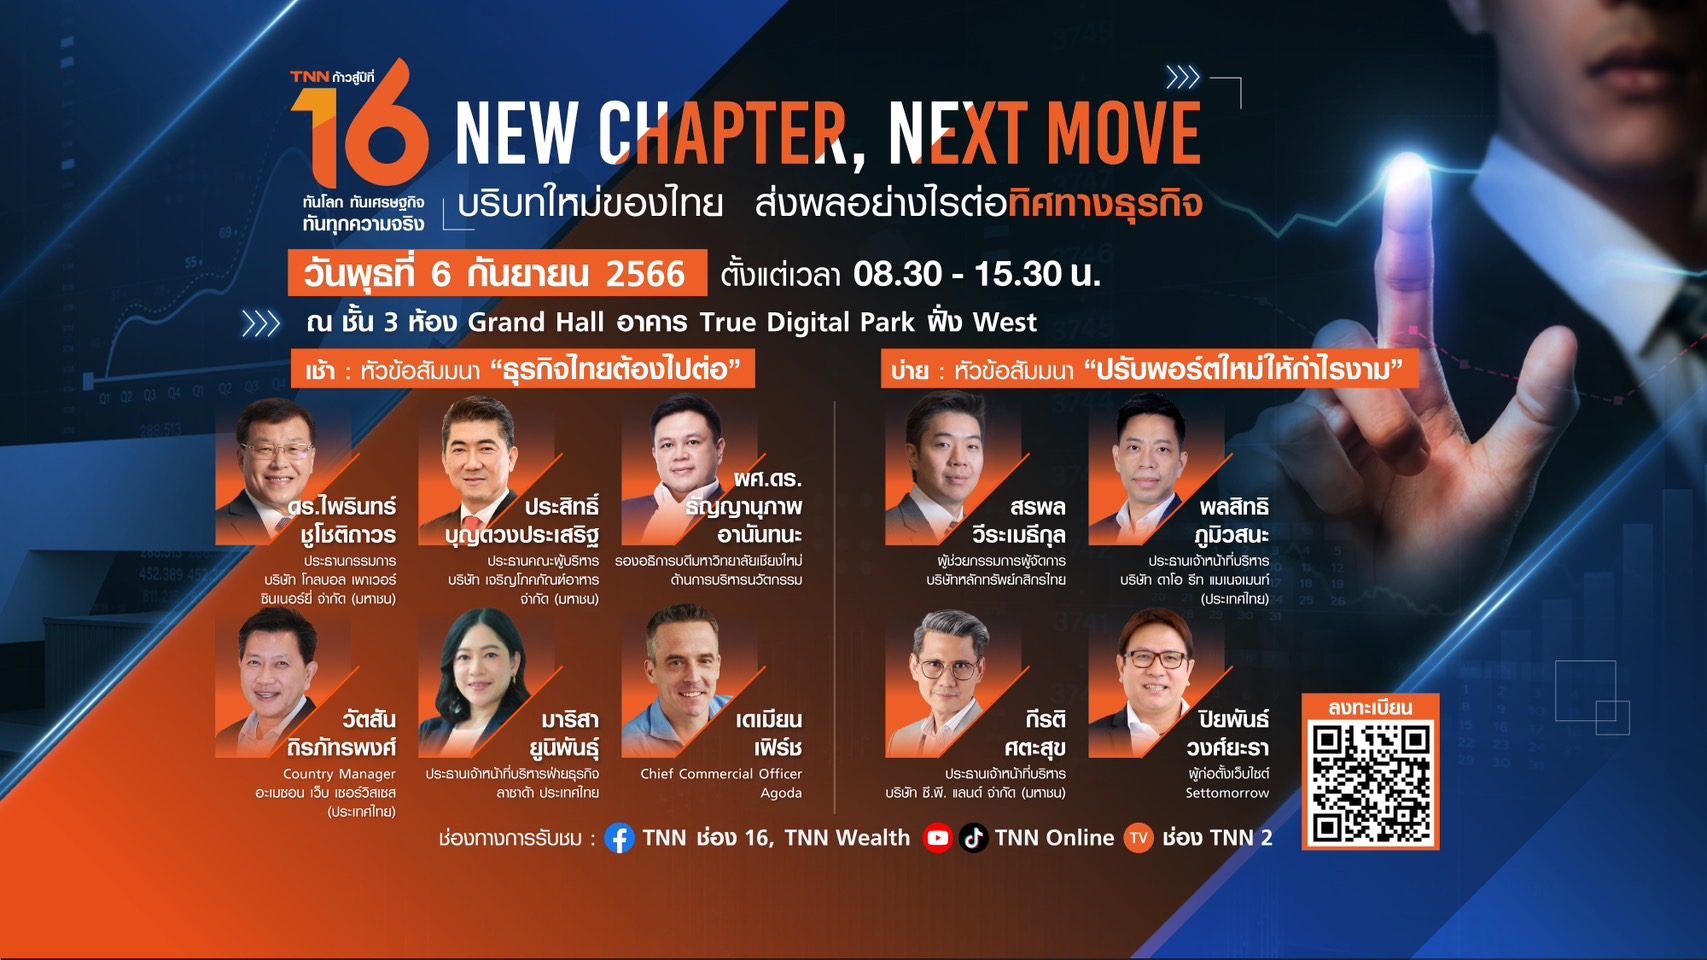 TNN ช่อง 16 จัดงานสัมมนา “บริบทใหม่ของไทย ส่งผลอย่างไรต่อทิศทางธุรกิจ”